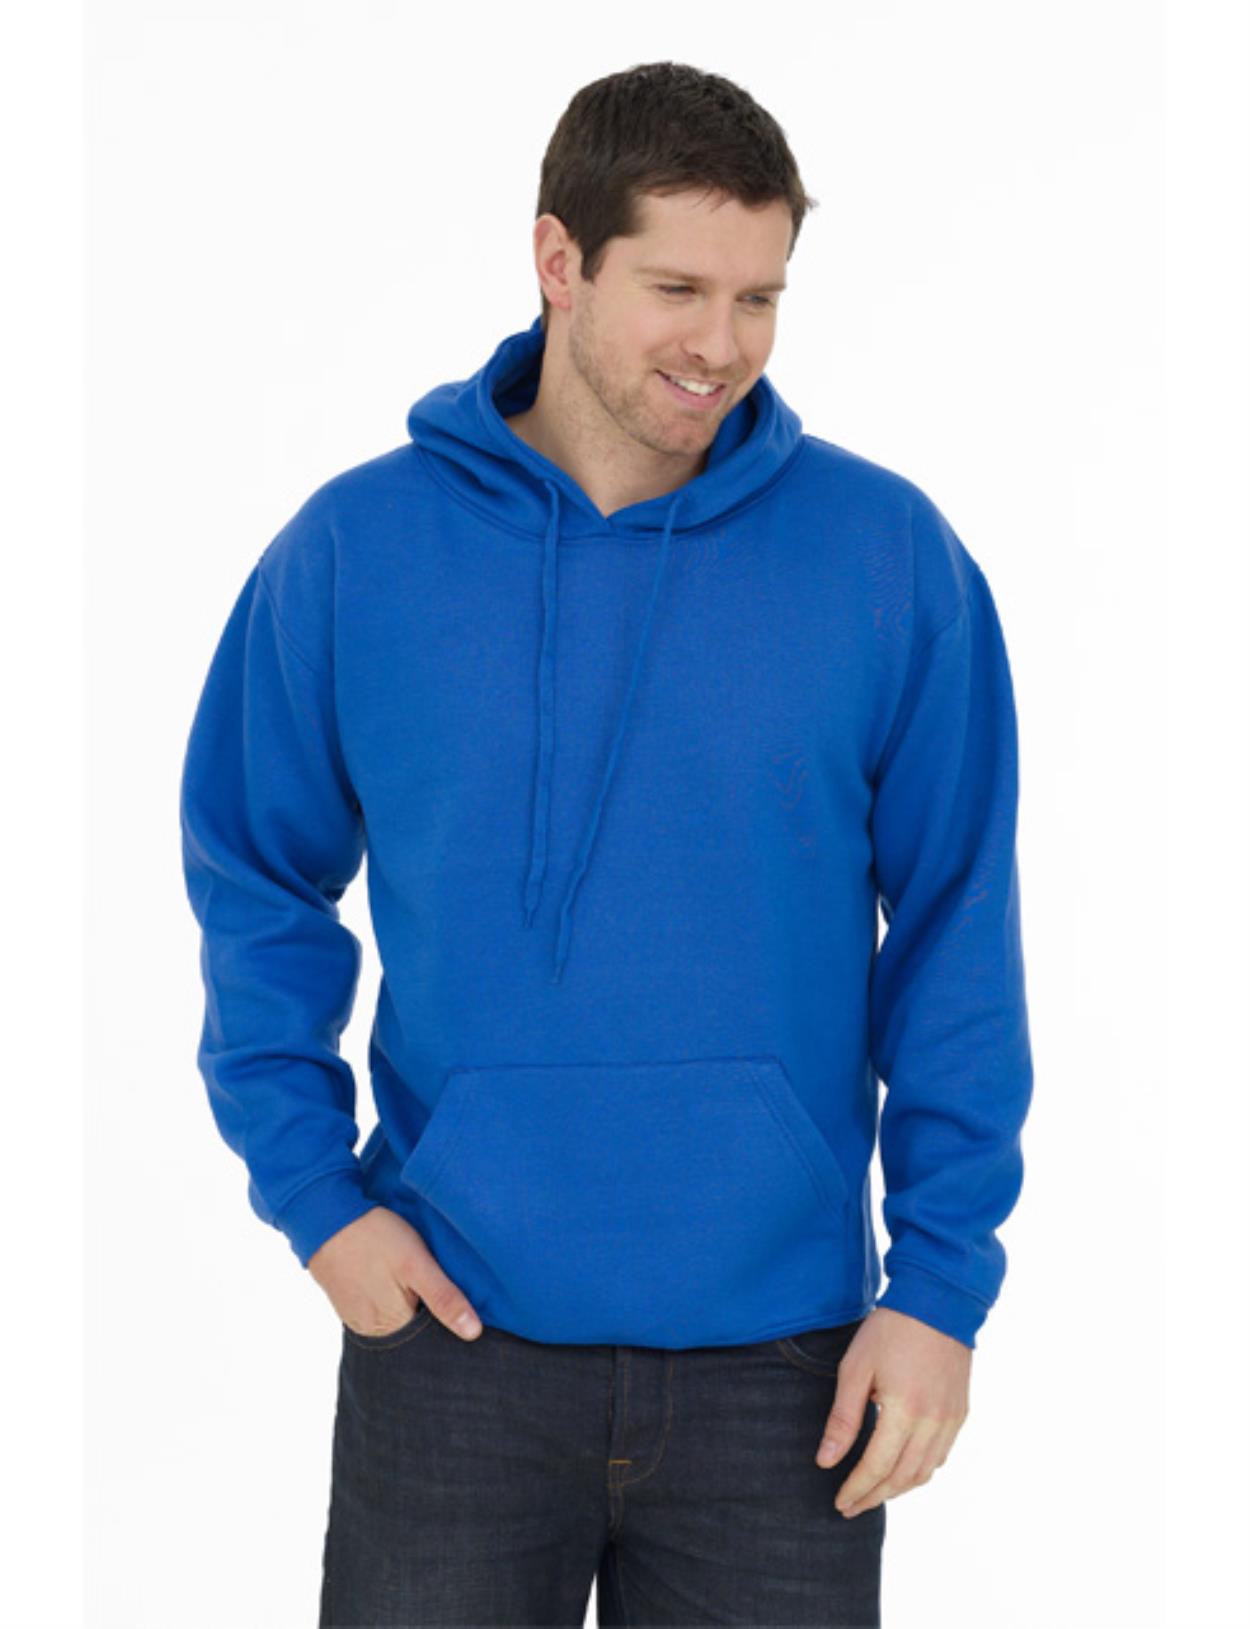 UC508 Olympic Hooded Sweatshirt Image 1